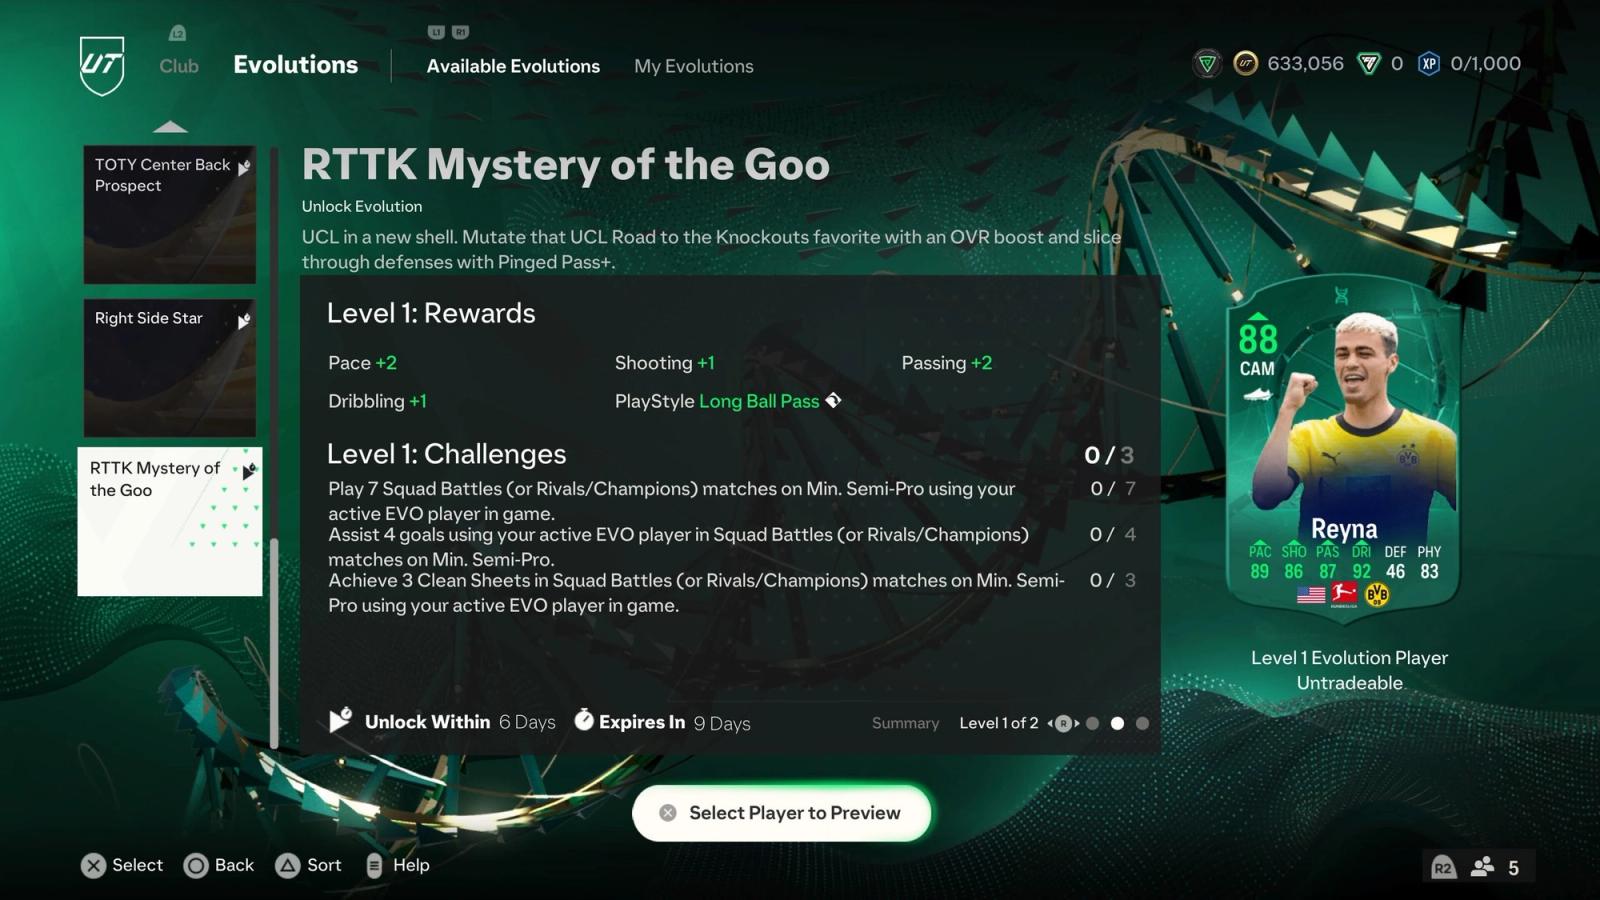 RTTK Mystery of the Goo Evolution